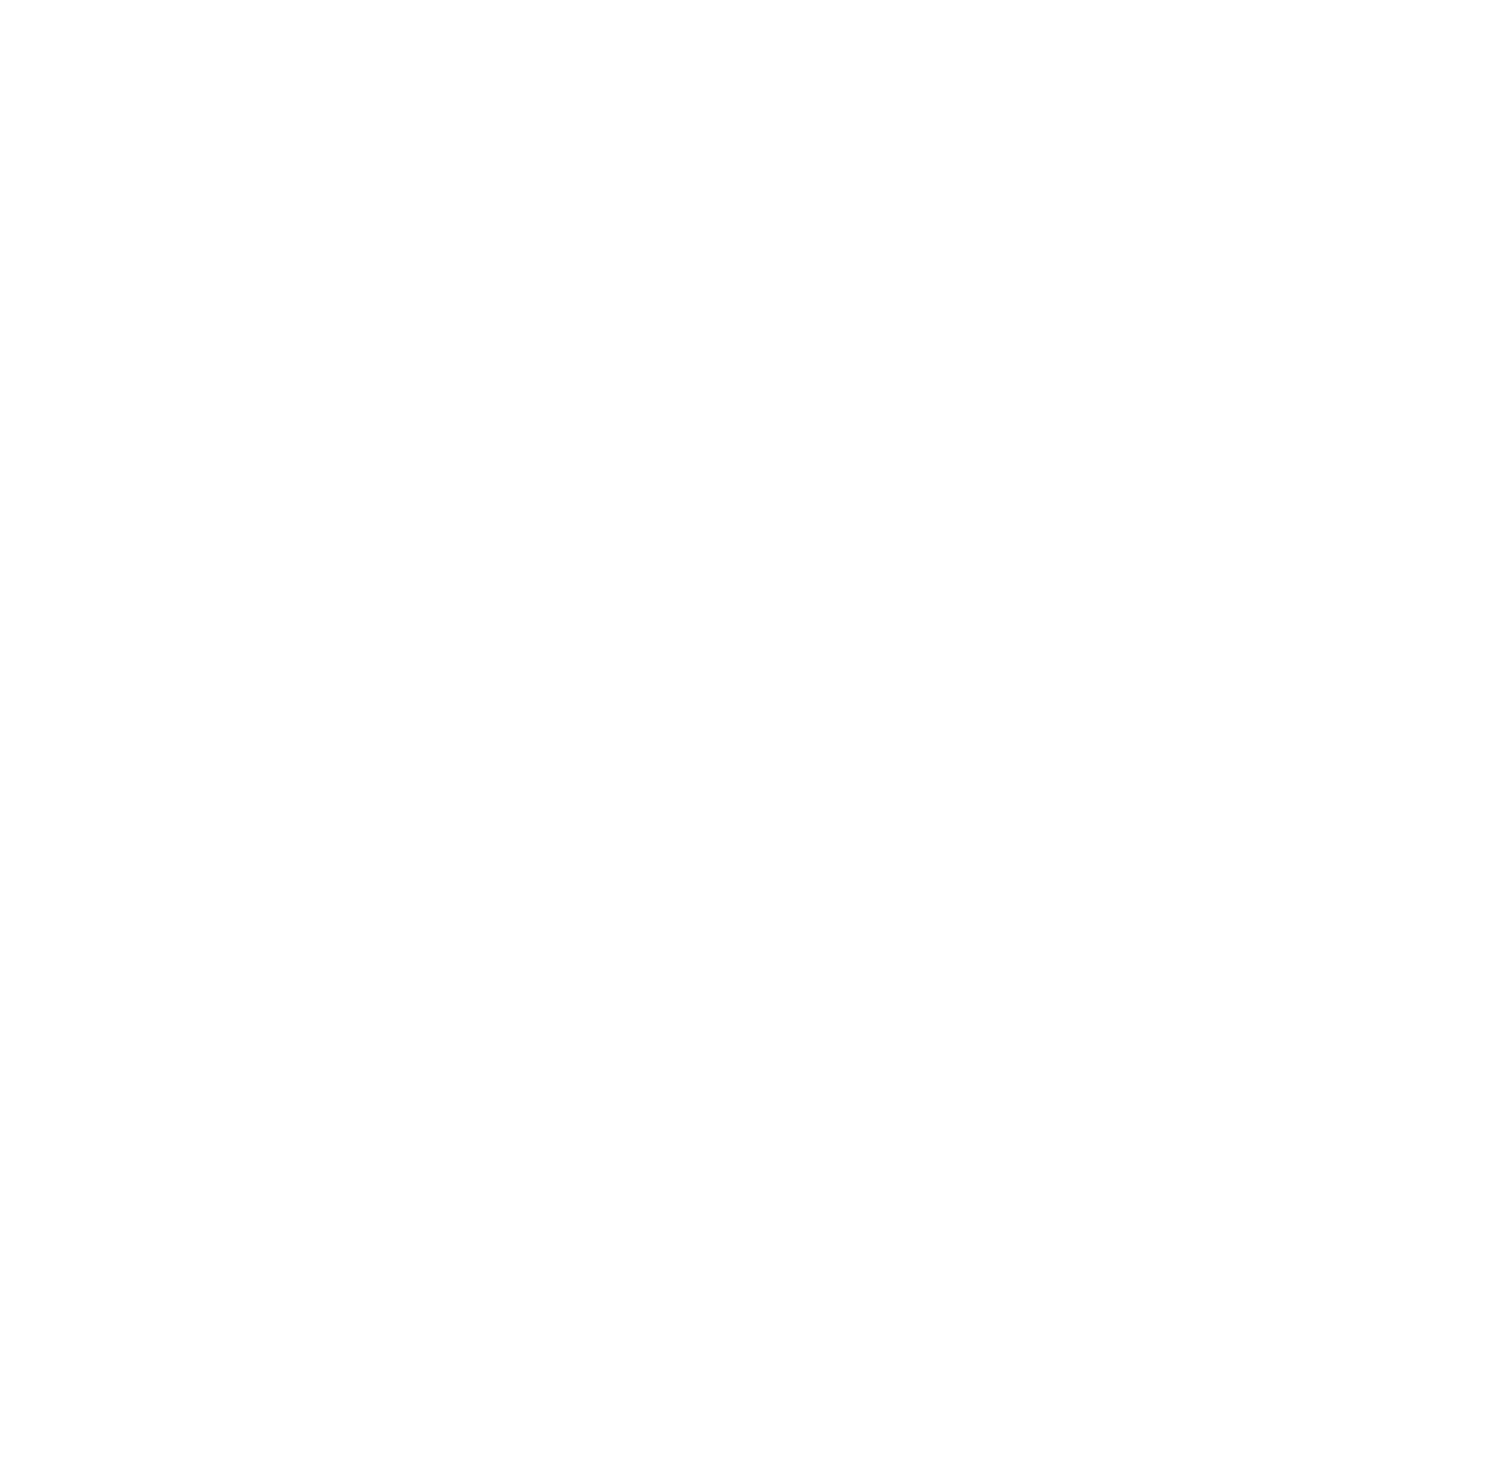 Red Oaks Forest School